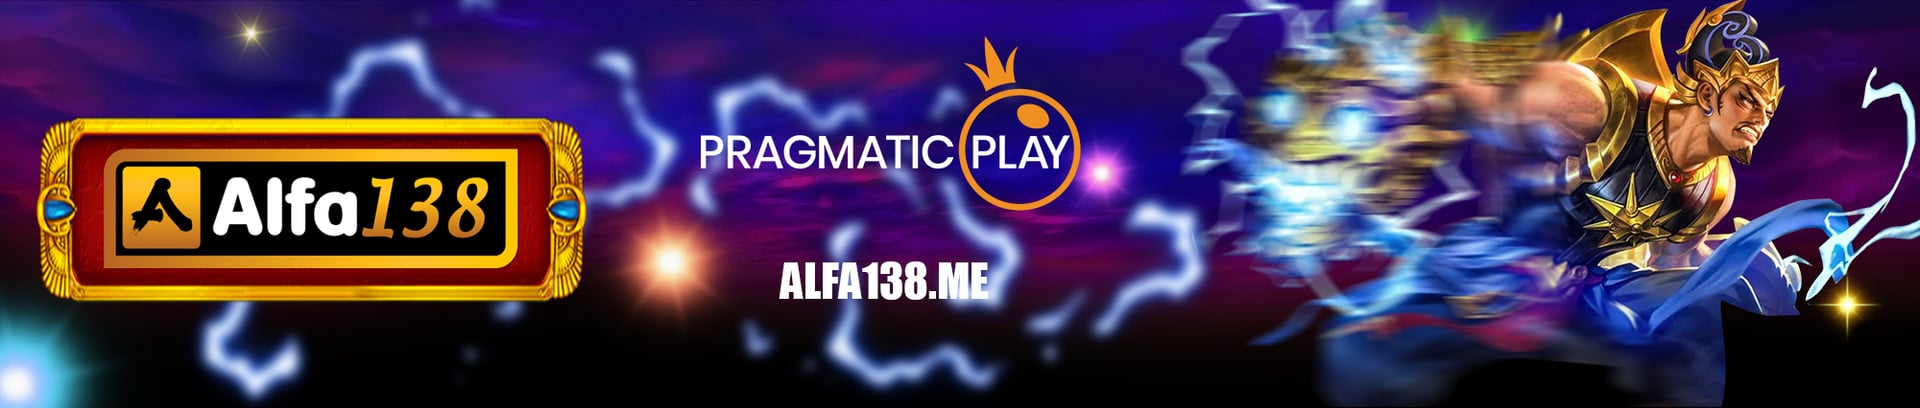 Alfa138 Tempat Bermain Online Terlengkap dan Terpercaya  Alfa138 Game Online Terlengkap dan Terpercayau